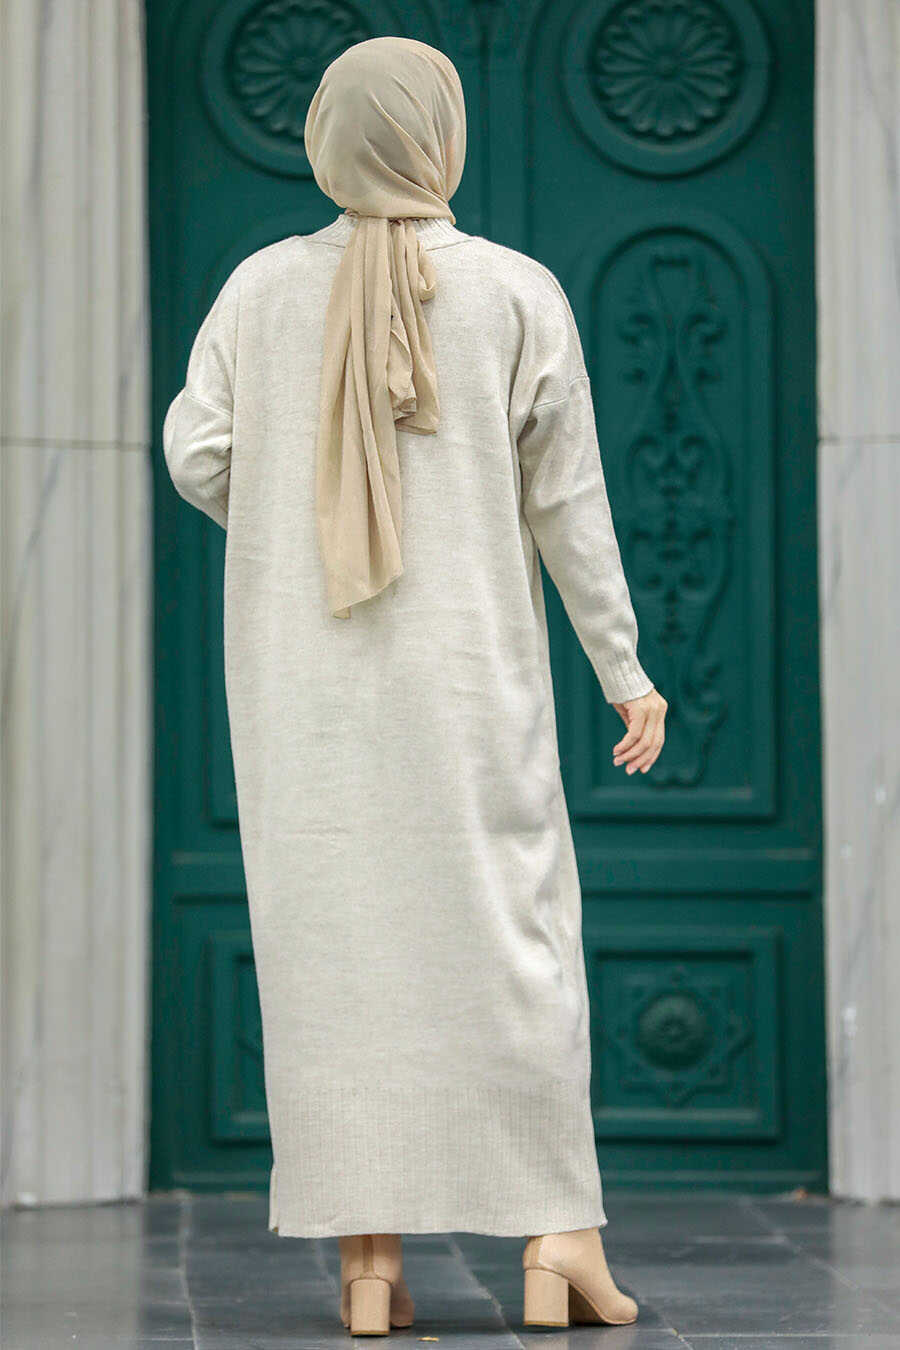 Neva Style - Beige Long Dress for Muslim Ladies Knitwear Dress 3409BEJ